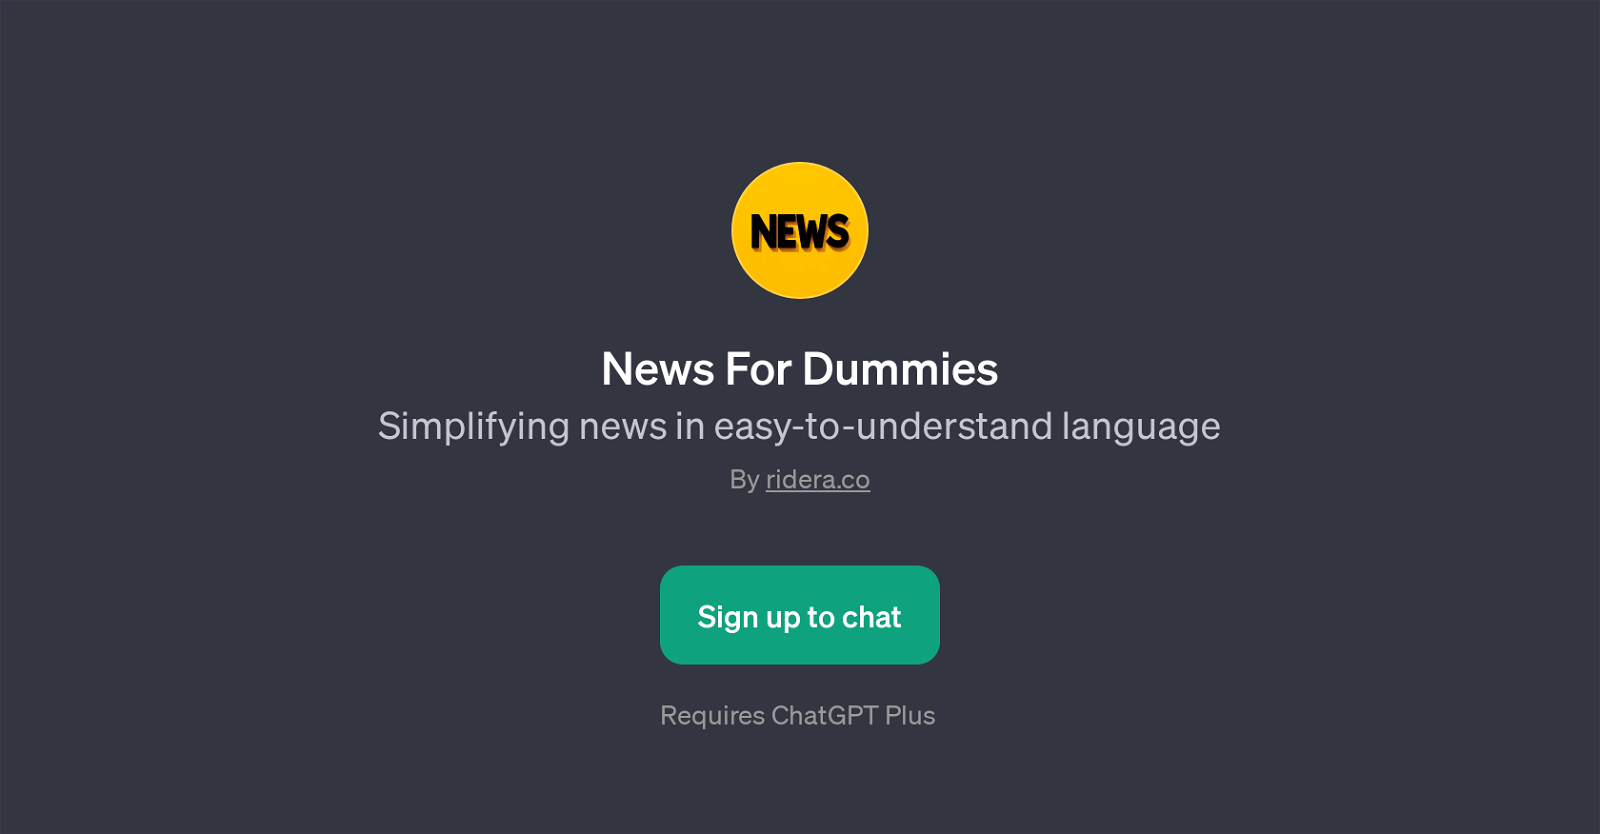 News For Dummies website